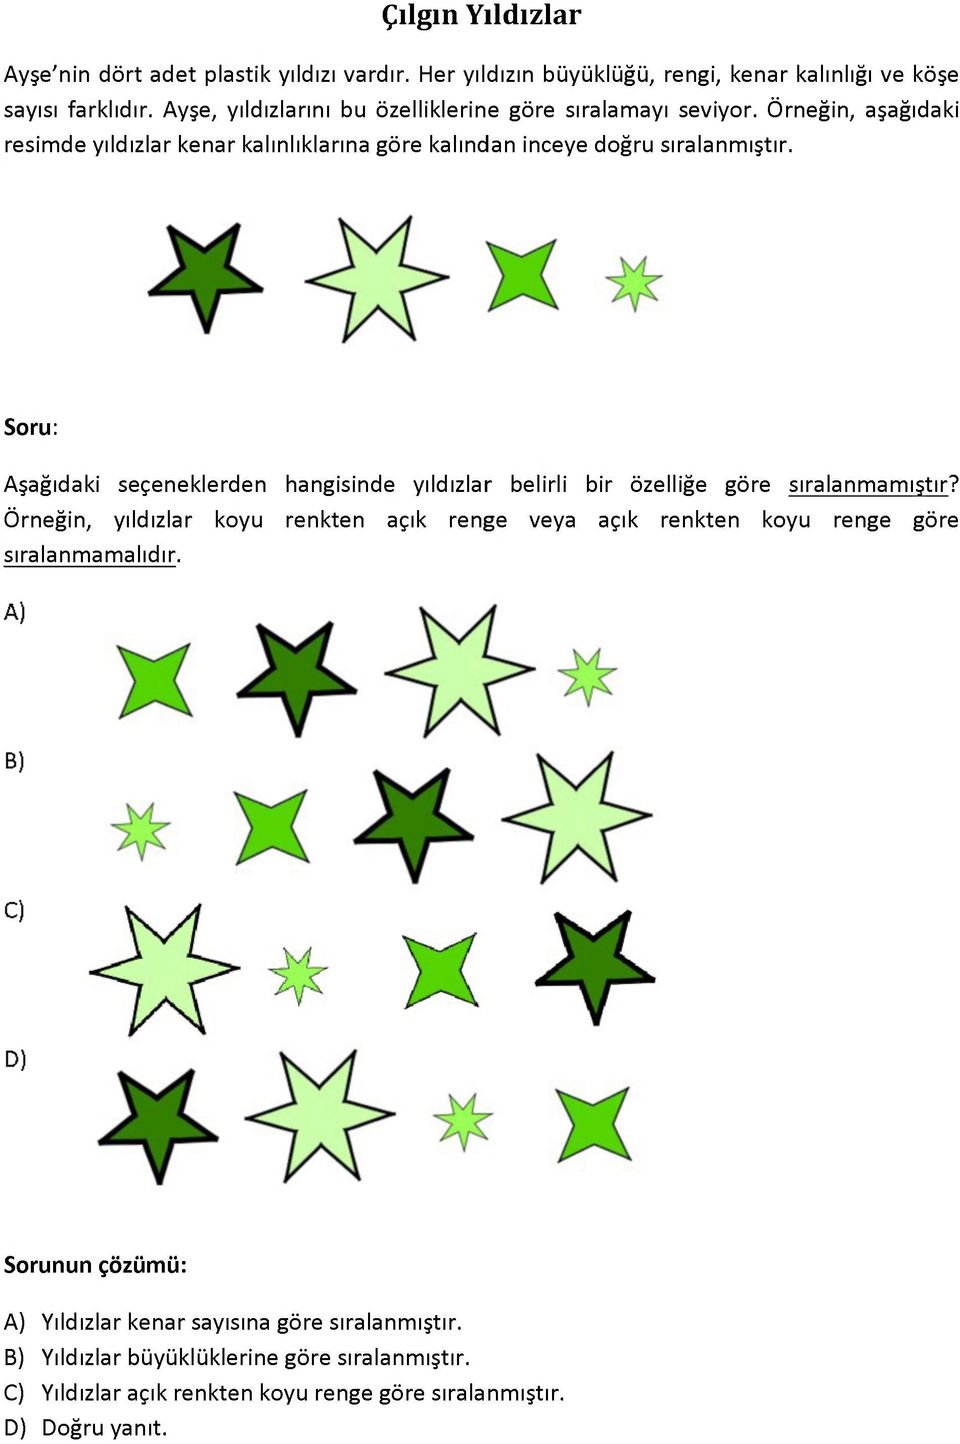 Aşağıdaki seçeneklerden hangisinde yıldızlar belirli bir özelliğe göre sıralanmamıştır?